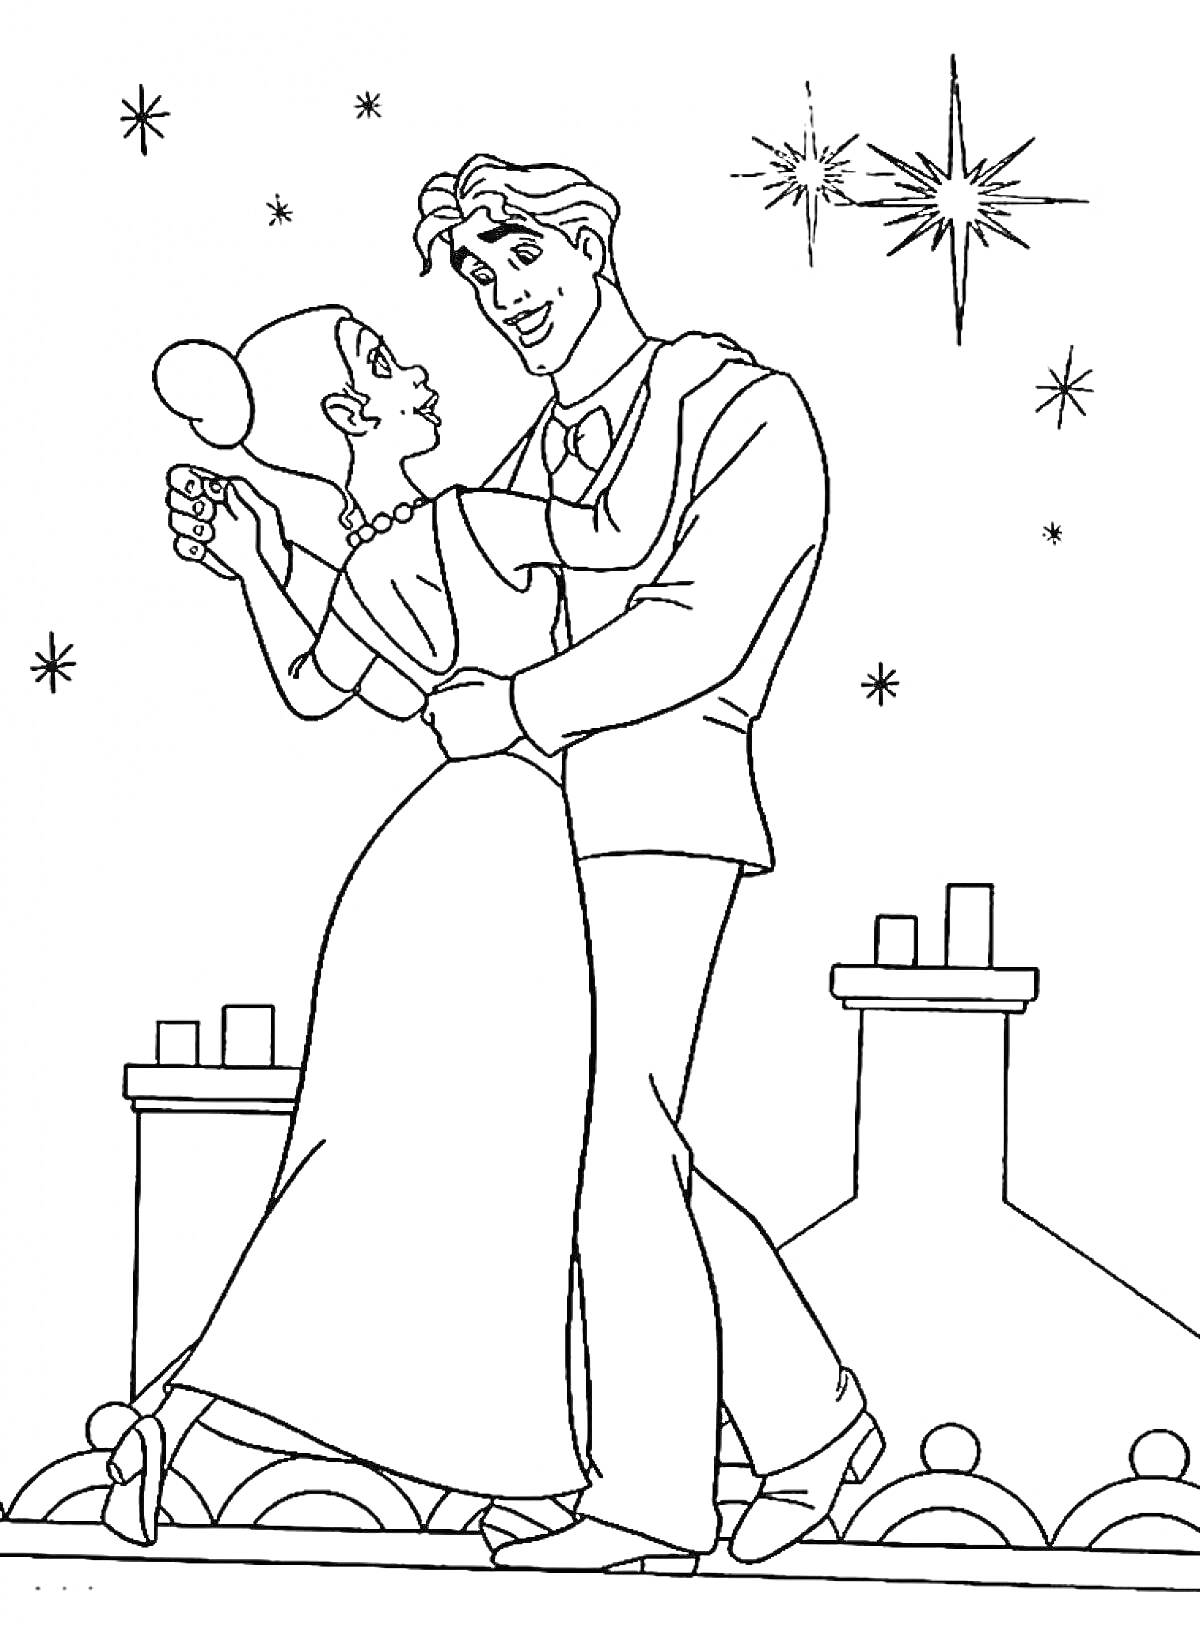 Раскраска Принц и принцесса танцуют на крыше под звездами.